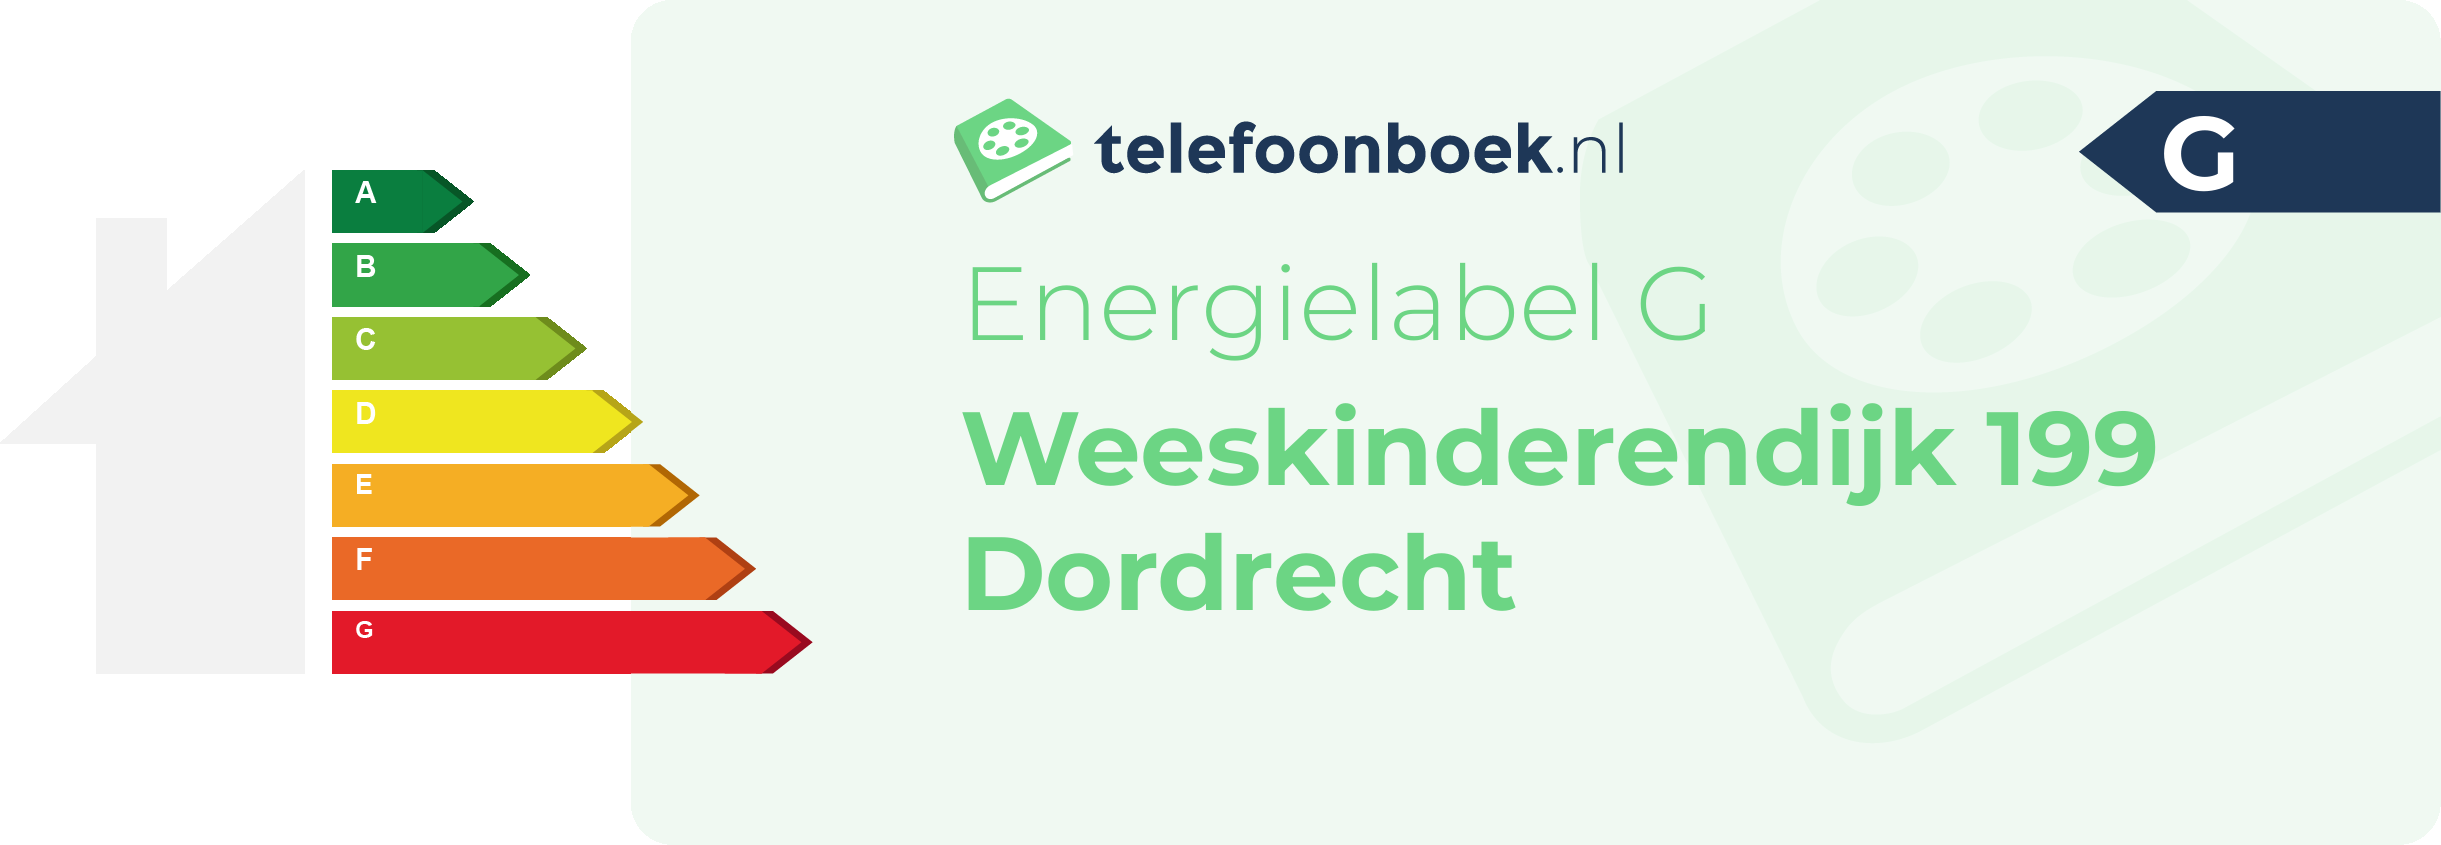 Energielabel Weeskinderendijk 199 Dordrecht